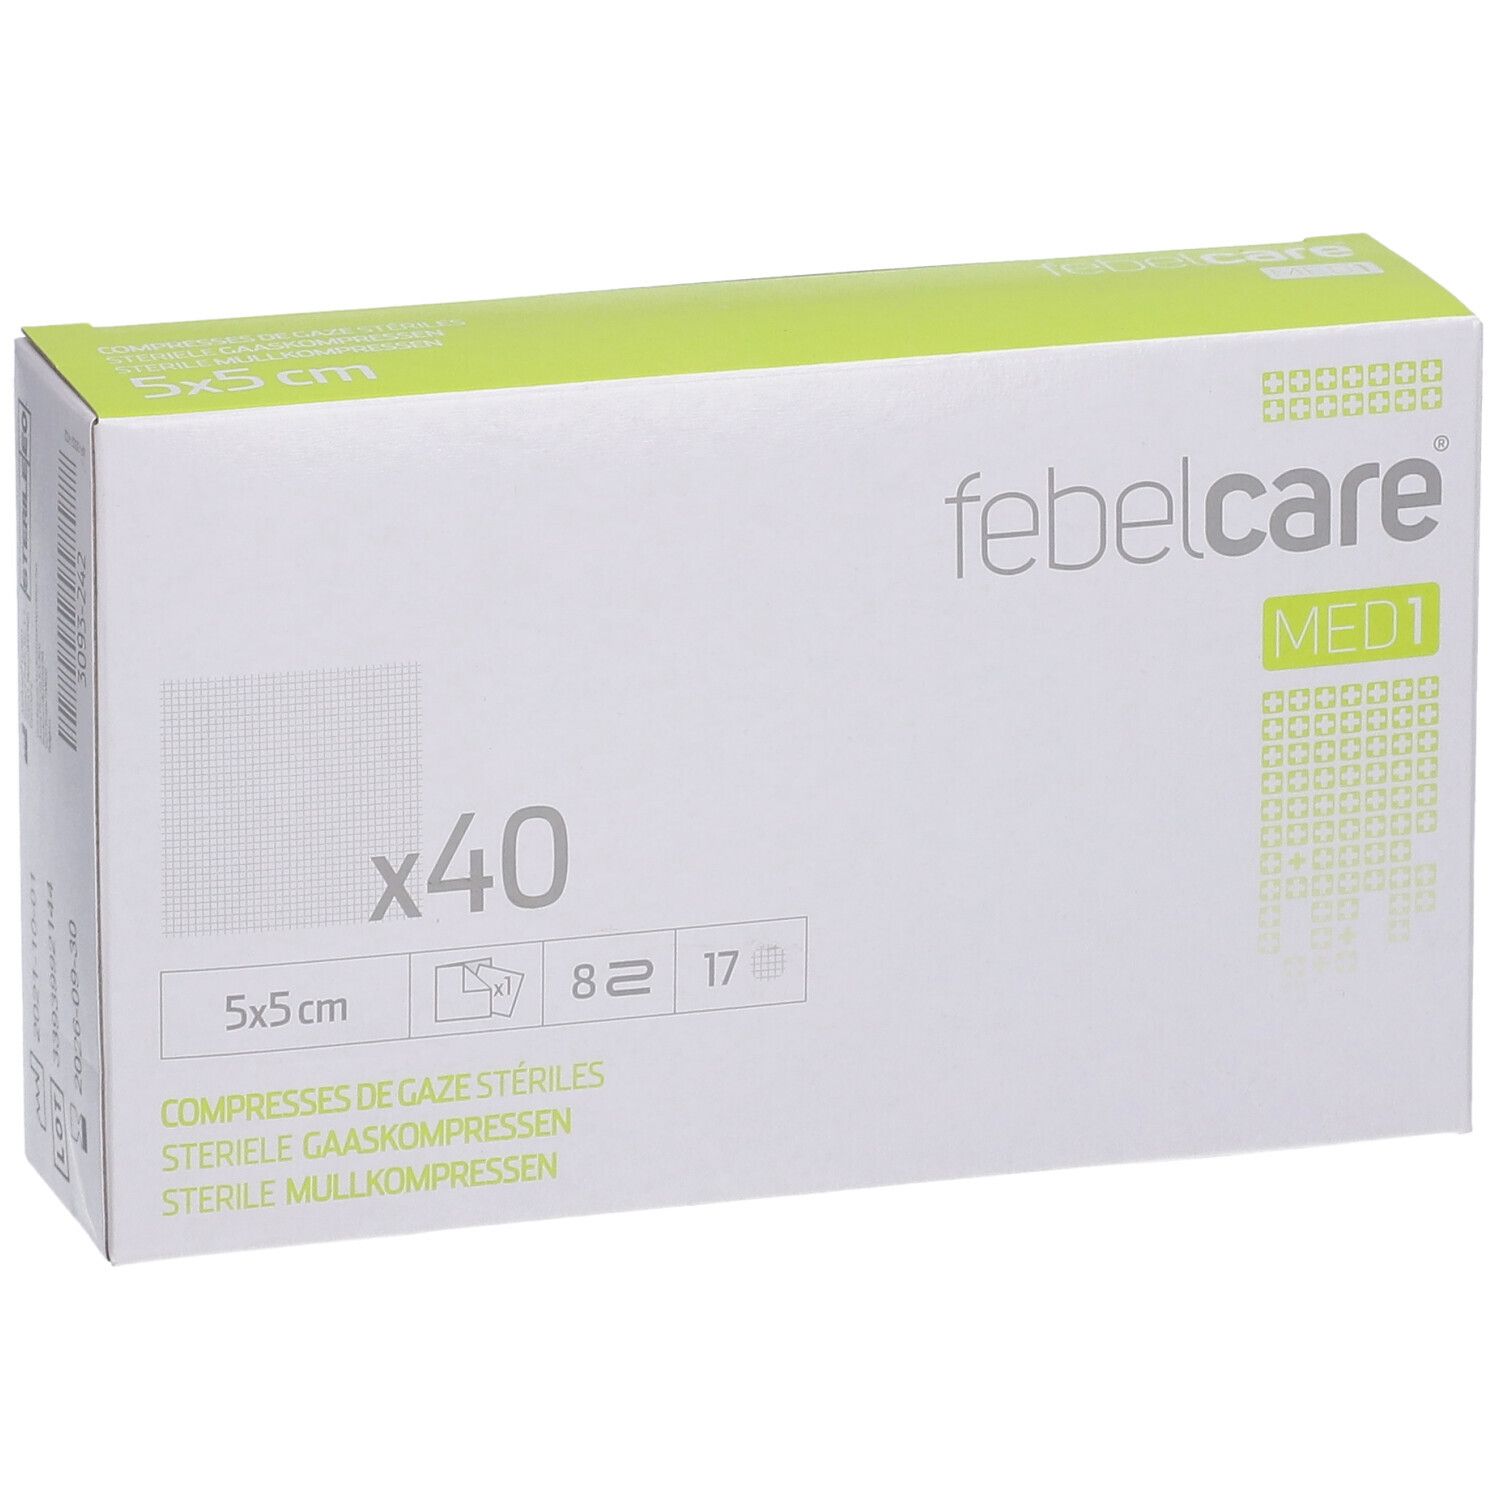 Febelcare® MED1 Compresses de gaze stériles 5 x 5 cm